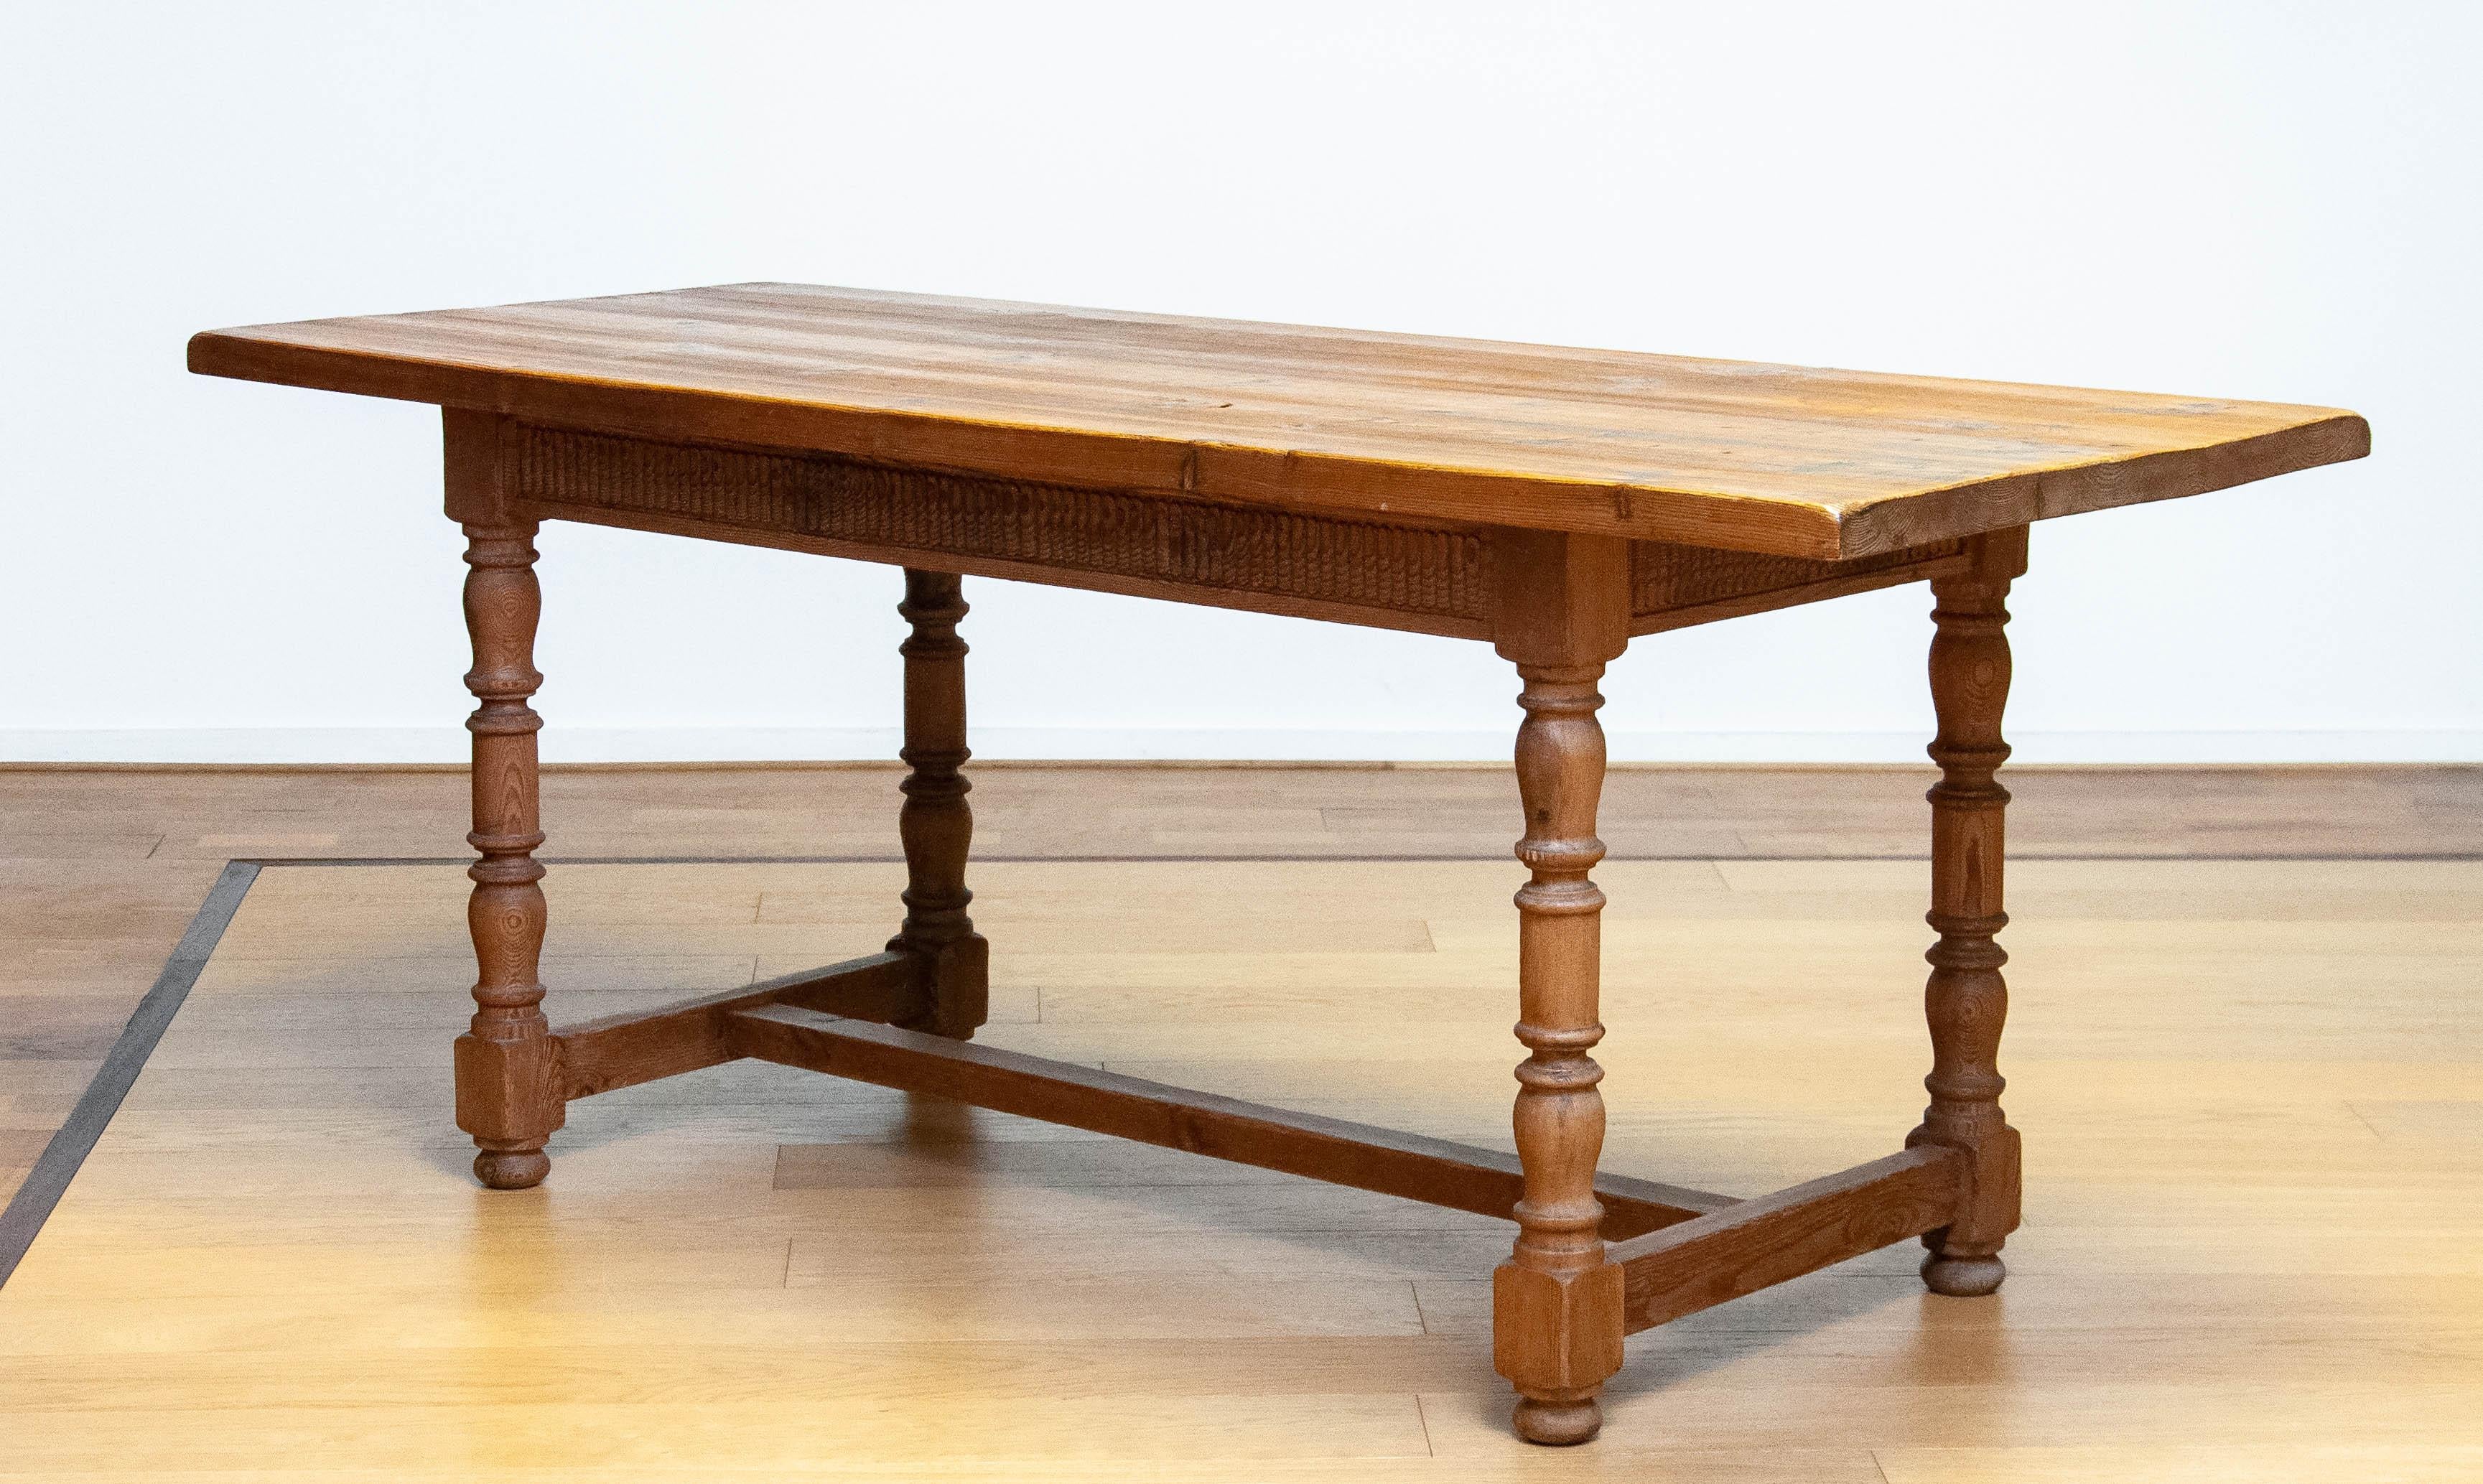 Absolut schöner schwedischer Bauernhoftisch aus dem späten 19. Jahrhundert in Kiefer. Aufgrund der ausgetrockneten Kiefernmaserung, die all die Jahre getreu ist, hat dieser Tisch einen fantastischen 'gelebten' Charakter, was ihn zu einem echten